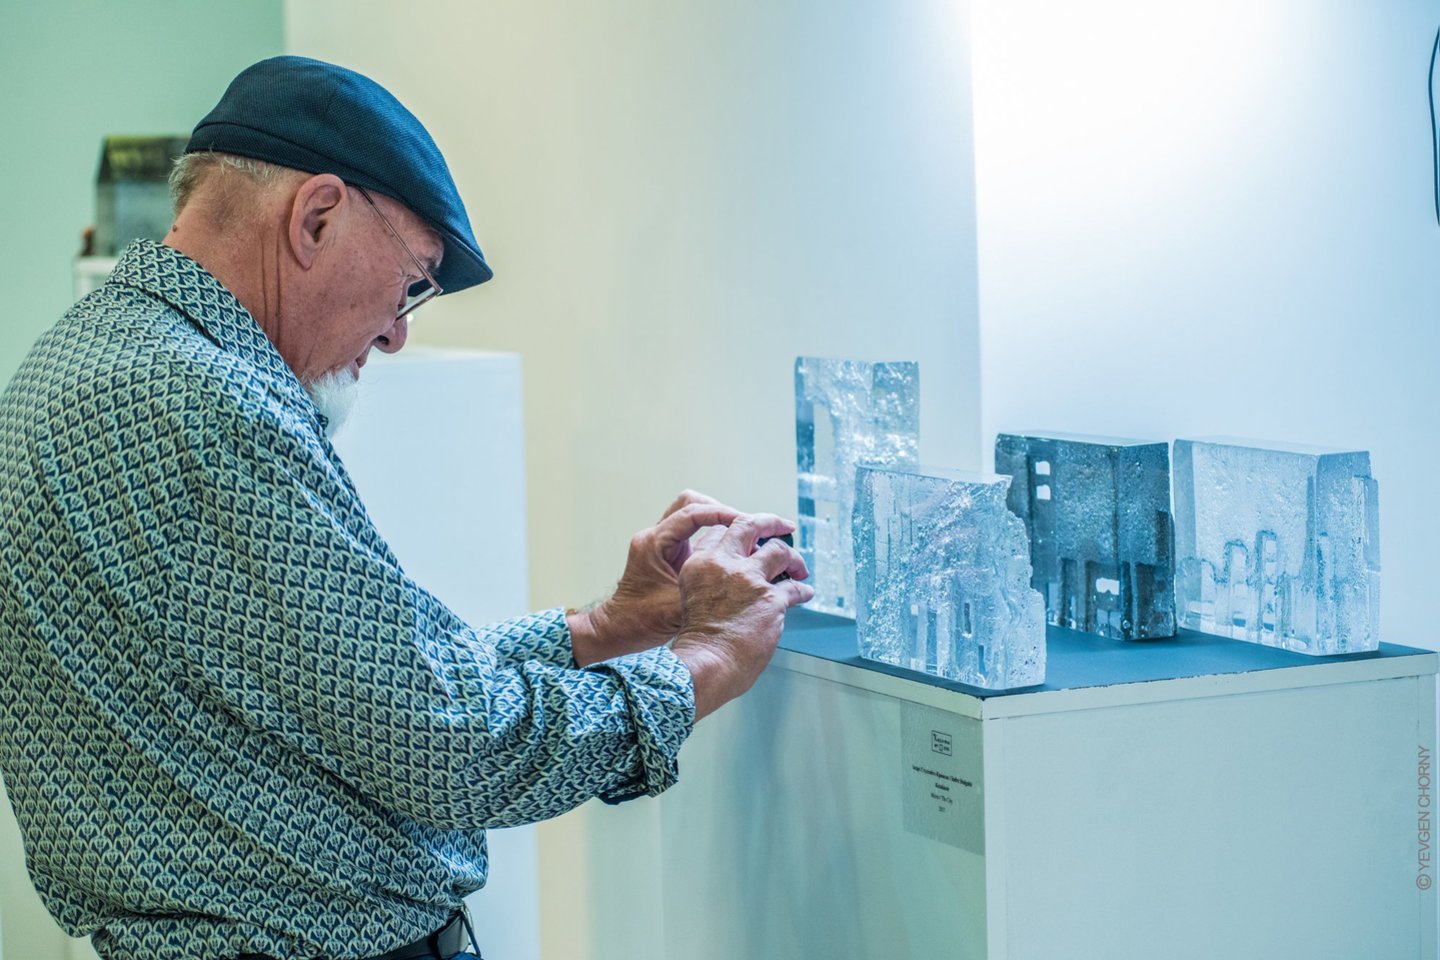 Ningbo stiklo muziejuje, kuris siekia pristatyti pasaulio laimėjimus stiklo meno srityje, yra Remigijaus Kriuko darbų.